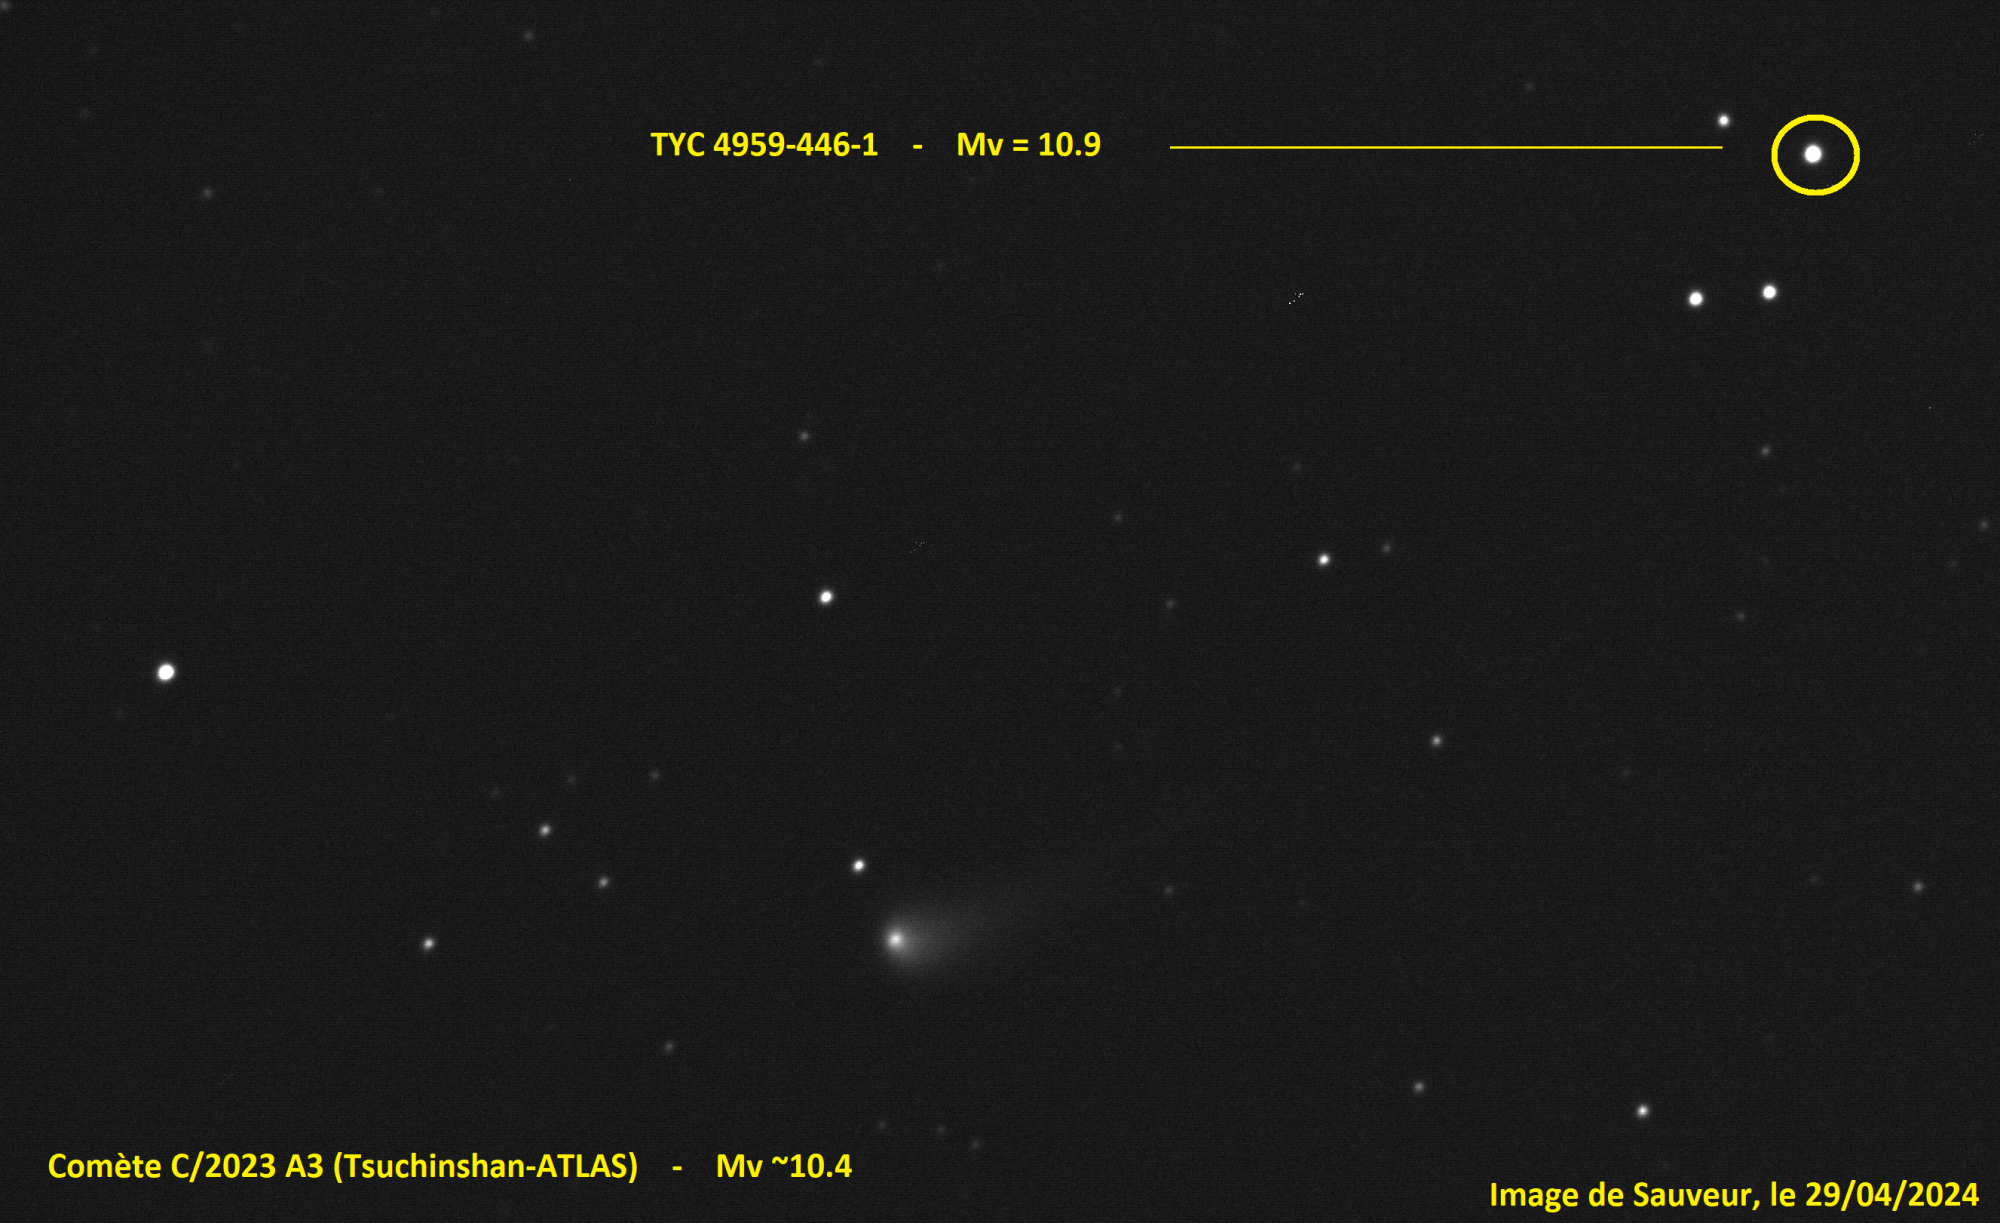 comete_sauveur_crop_png_annotee.thumb.png.de3b3c26f456812ab487e02d15d771a3.png